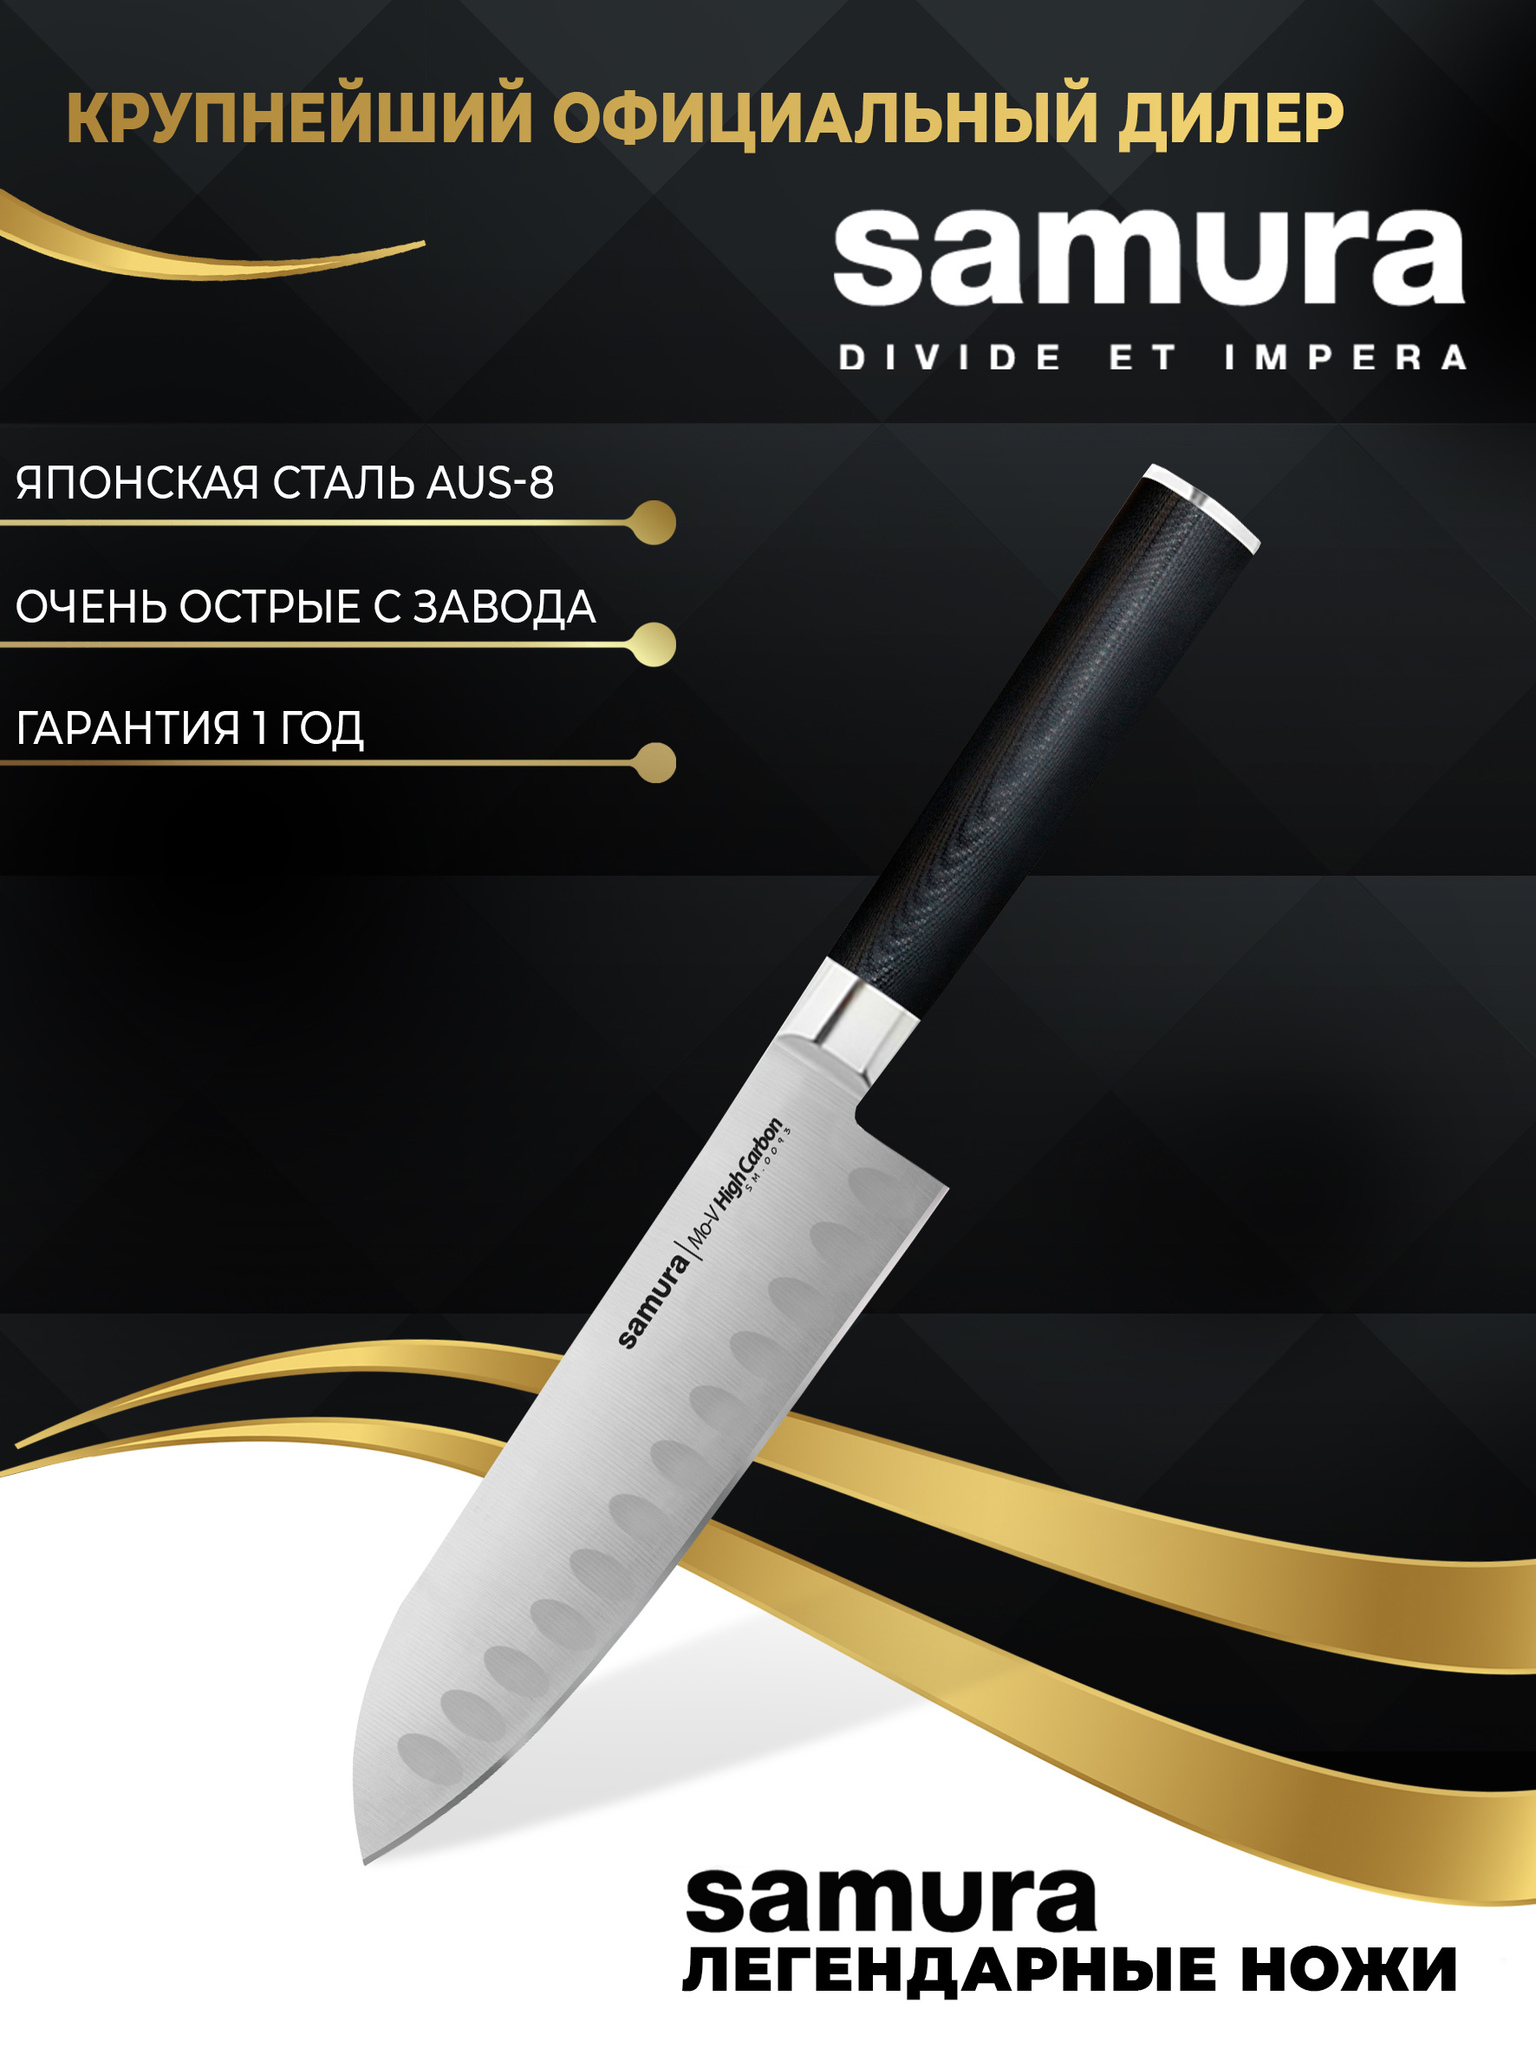 Производство японских ножей Samura